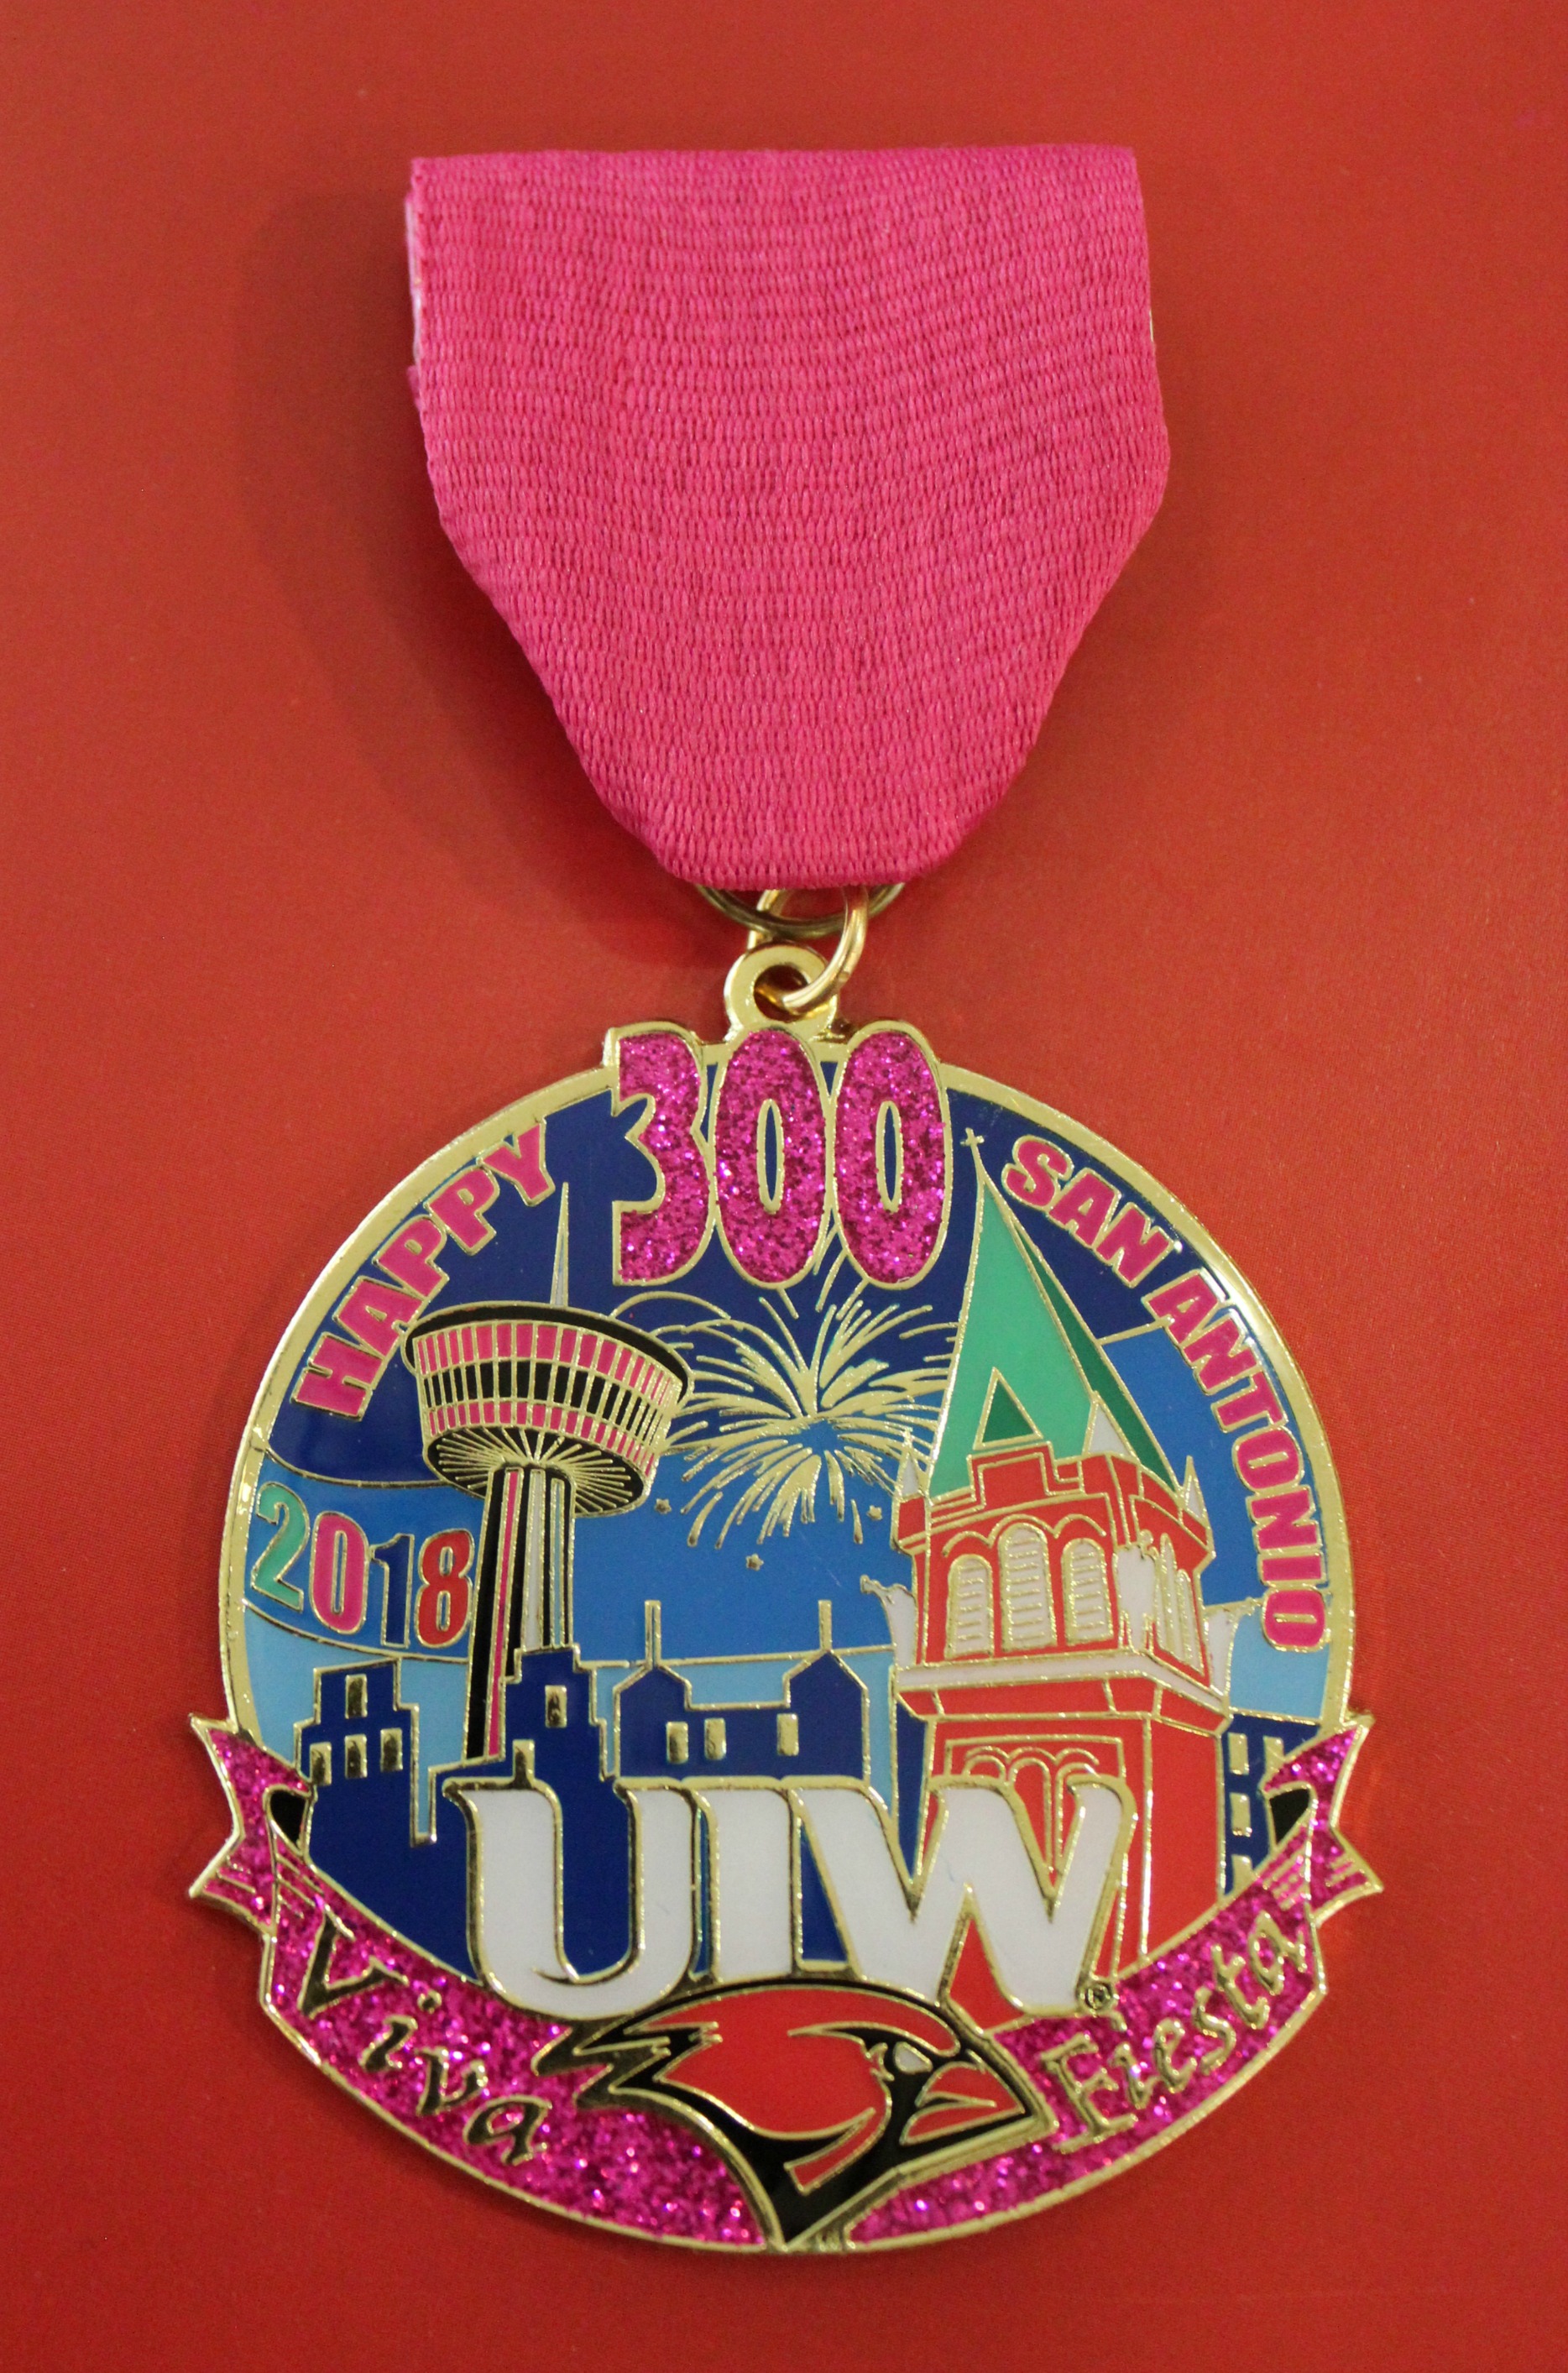 uiw fiesta medal 2018